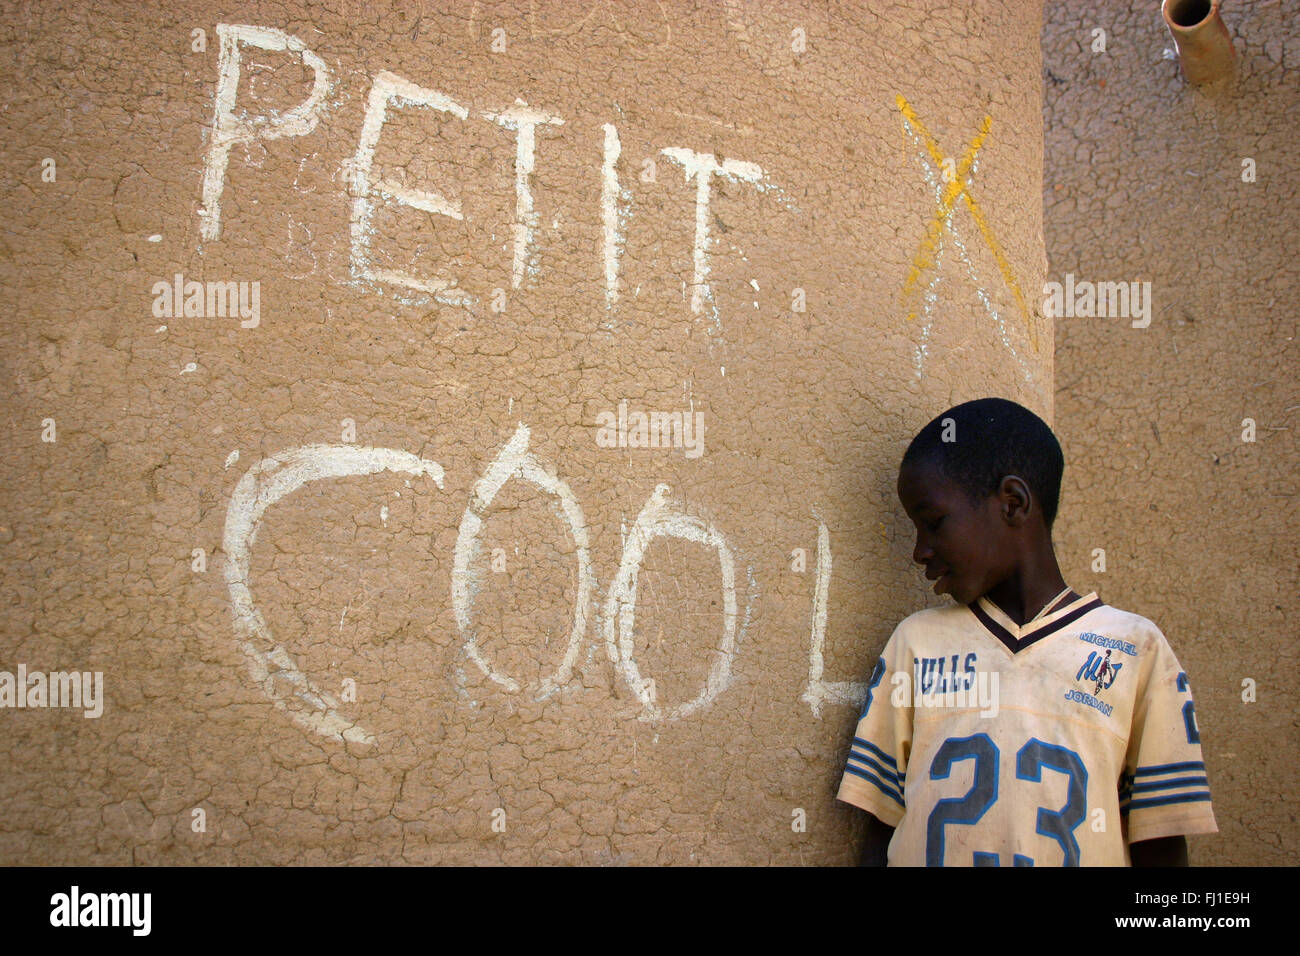 Enfant dans les rues de Djenné, Mali, avec 'PETIT COOL" écrit sur le mur ('Young et cool") Banque D'Images